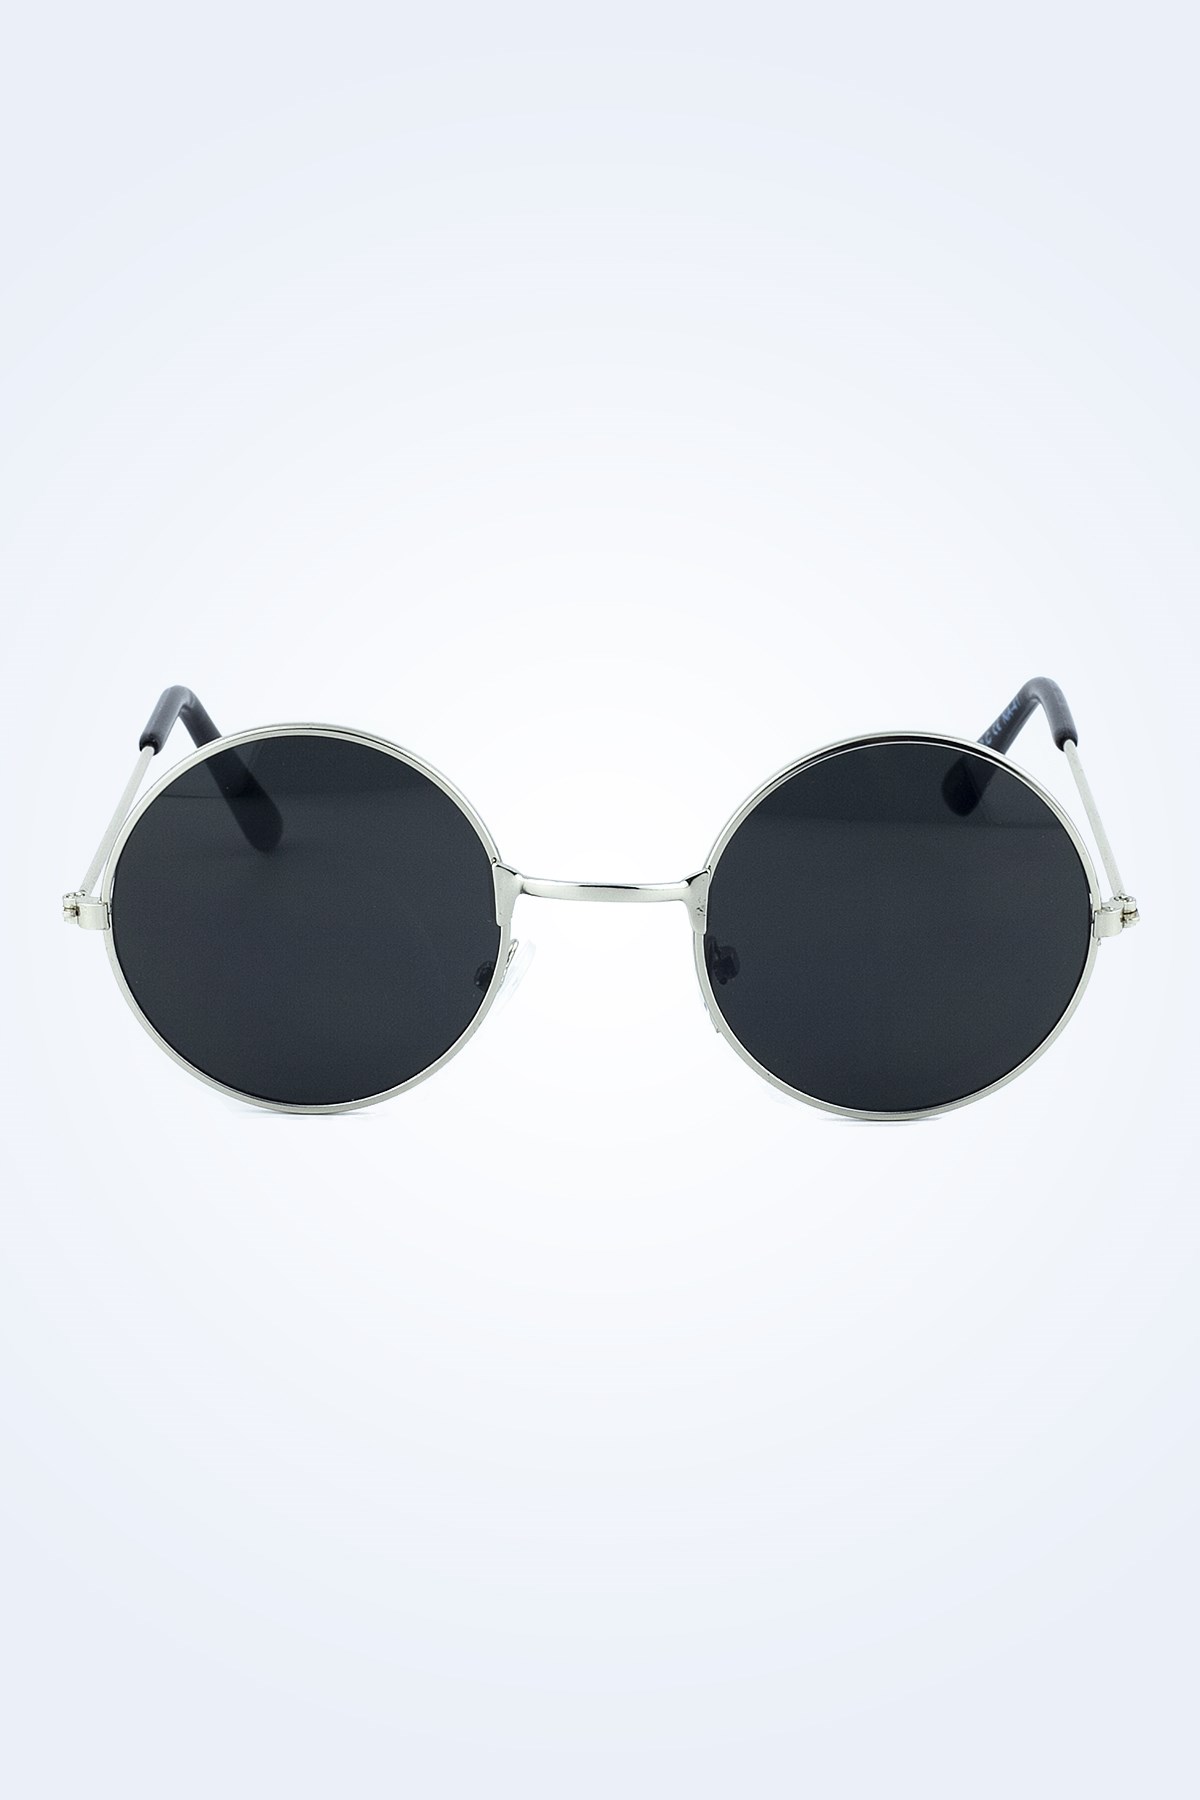 John Lennon Tarzı Güneş Gözlüğü Modelleri Yuvarlak | Kokoş Hanım